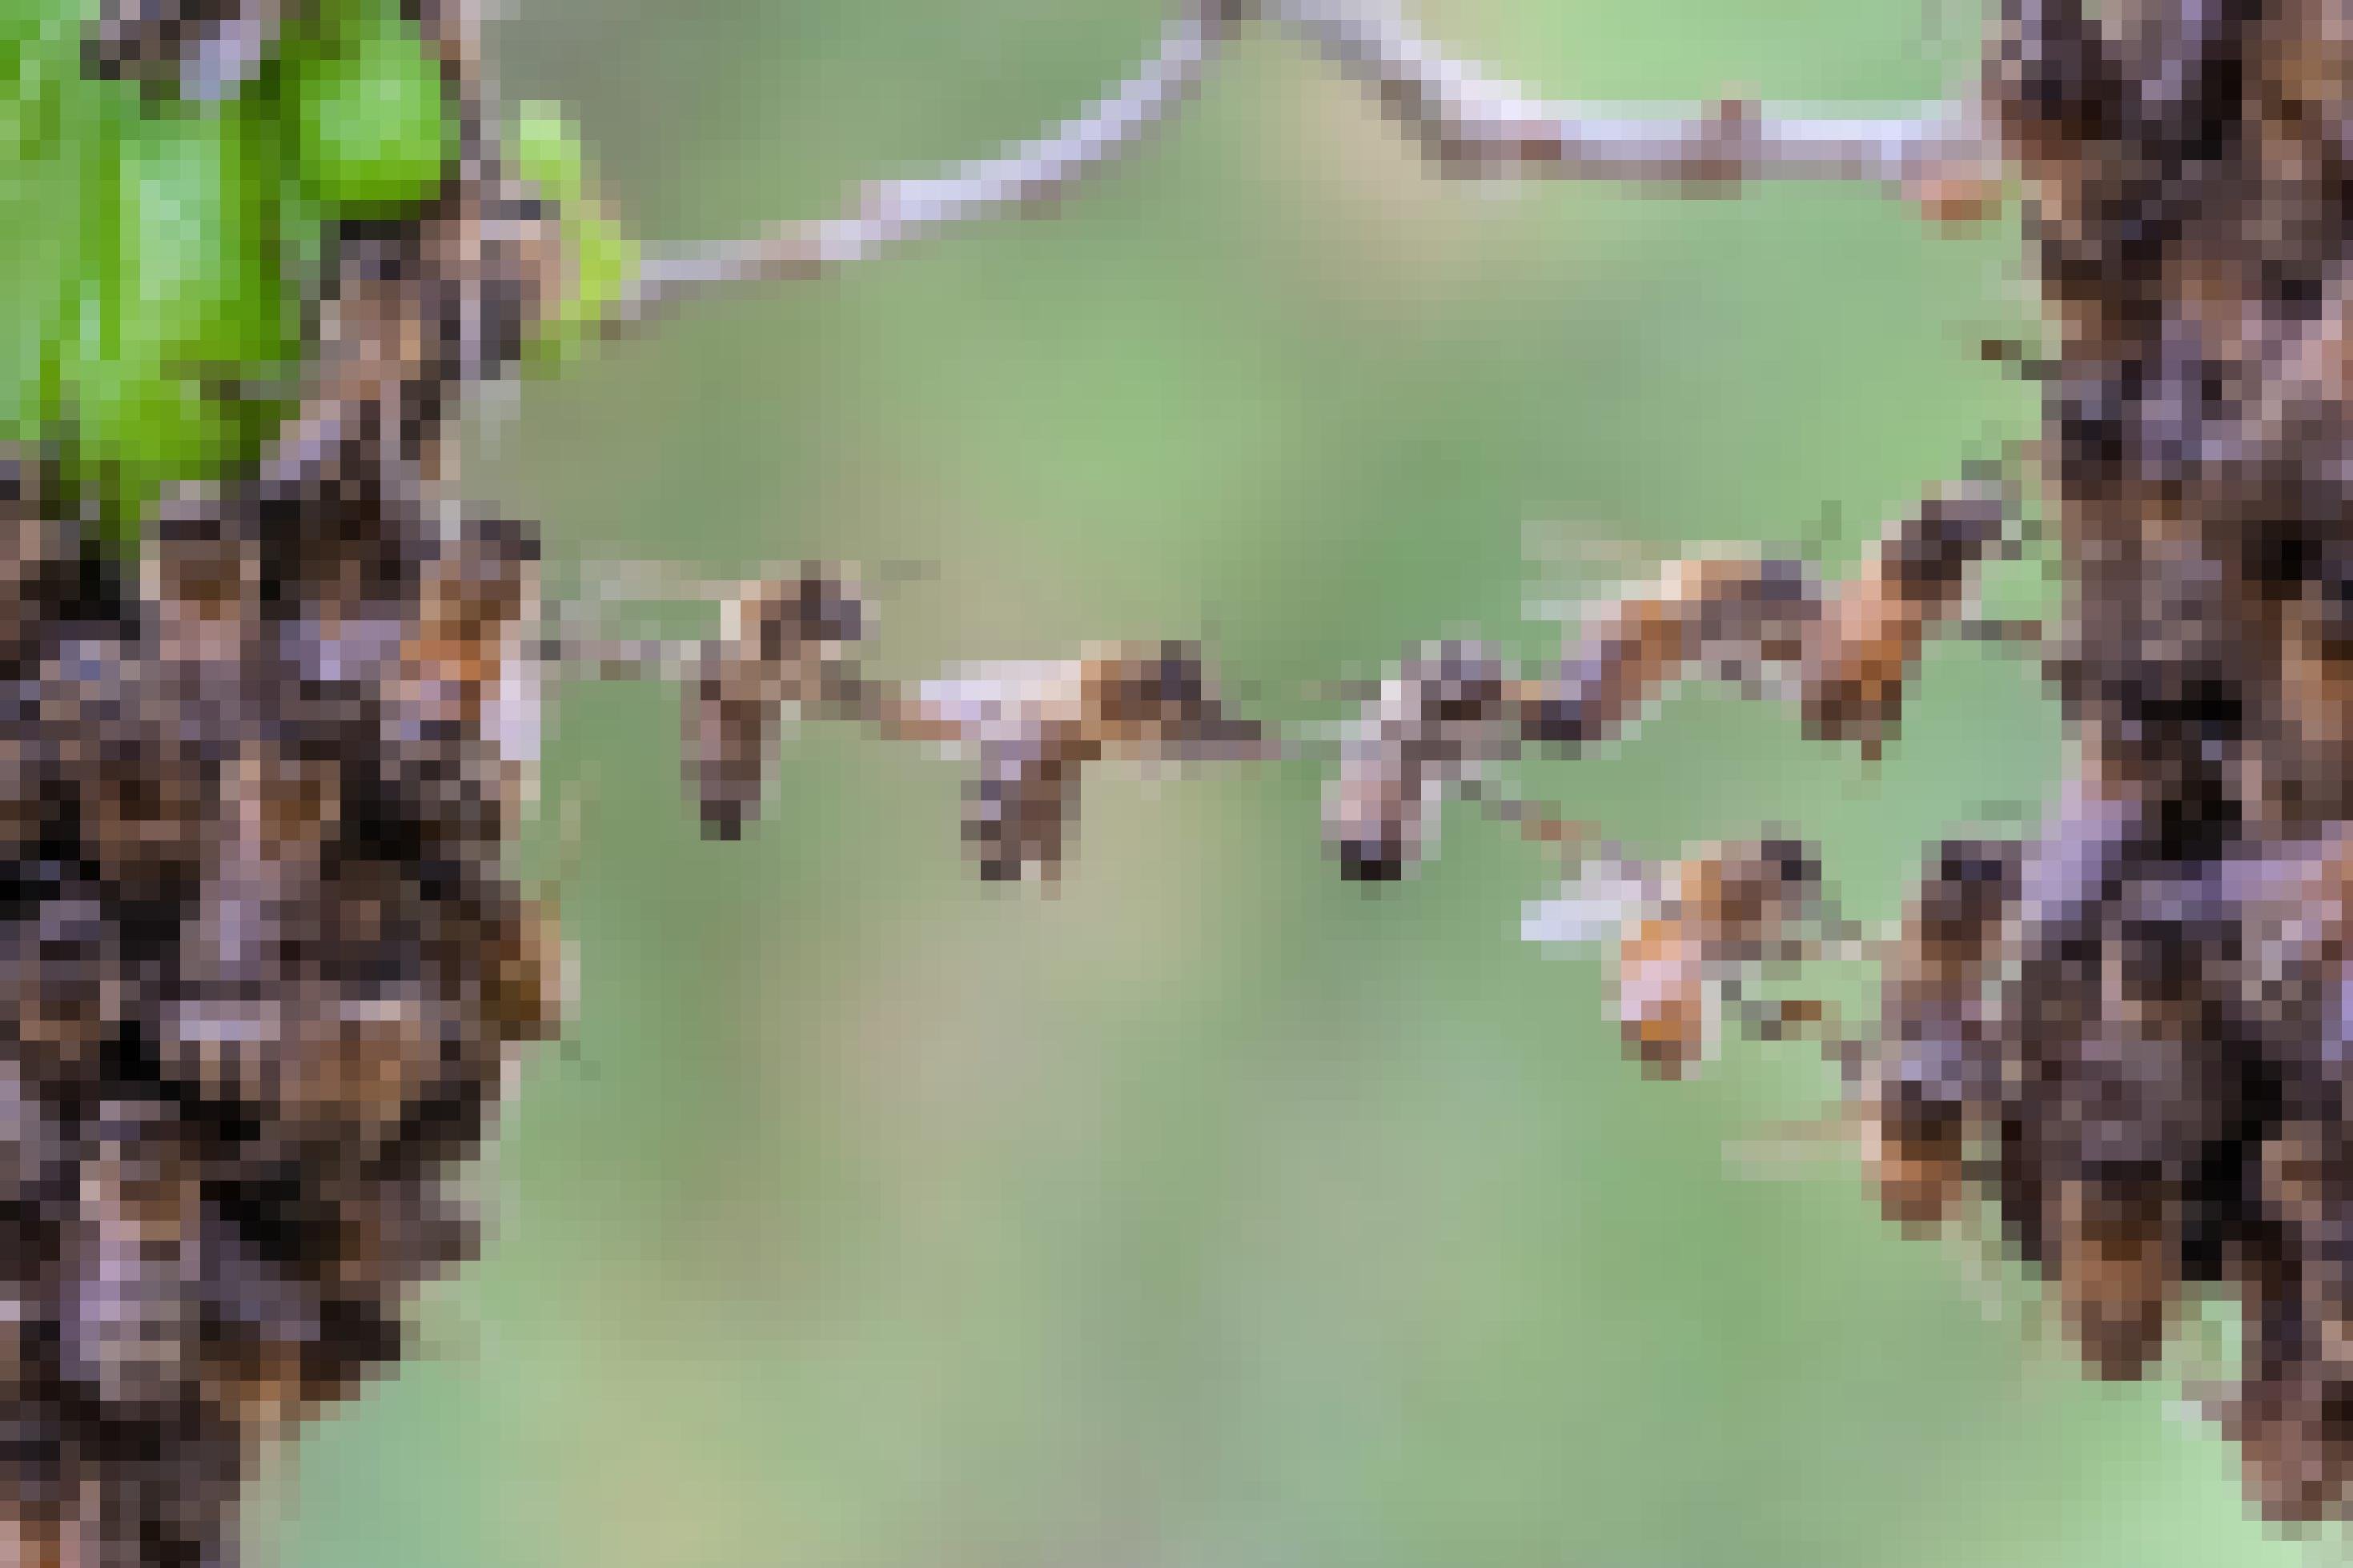 Rechts und Links am Bildrand sitzt ein Bienenschwarm. Beide Bündel werden durch eine Kette verbunden, die fünf Bienen, die sich gegenseitig berühren, miteinander bilden.